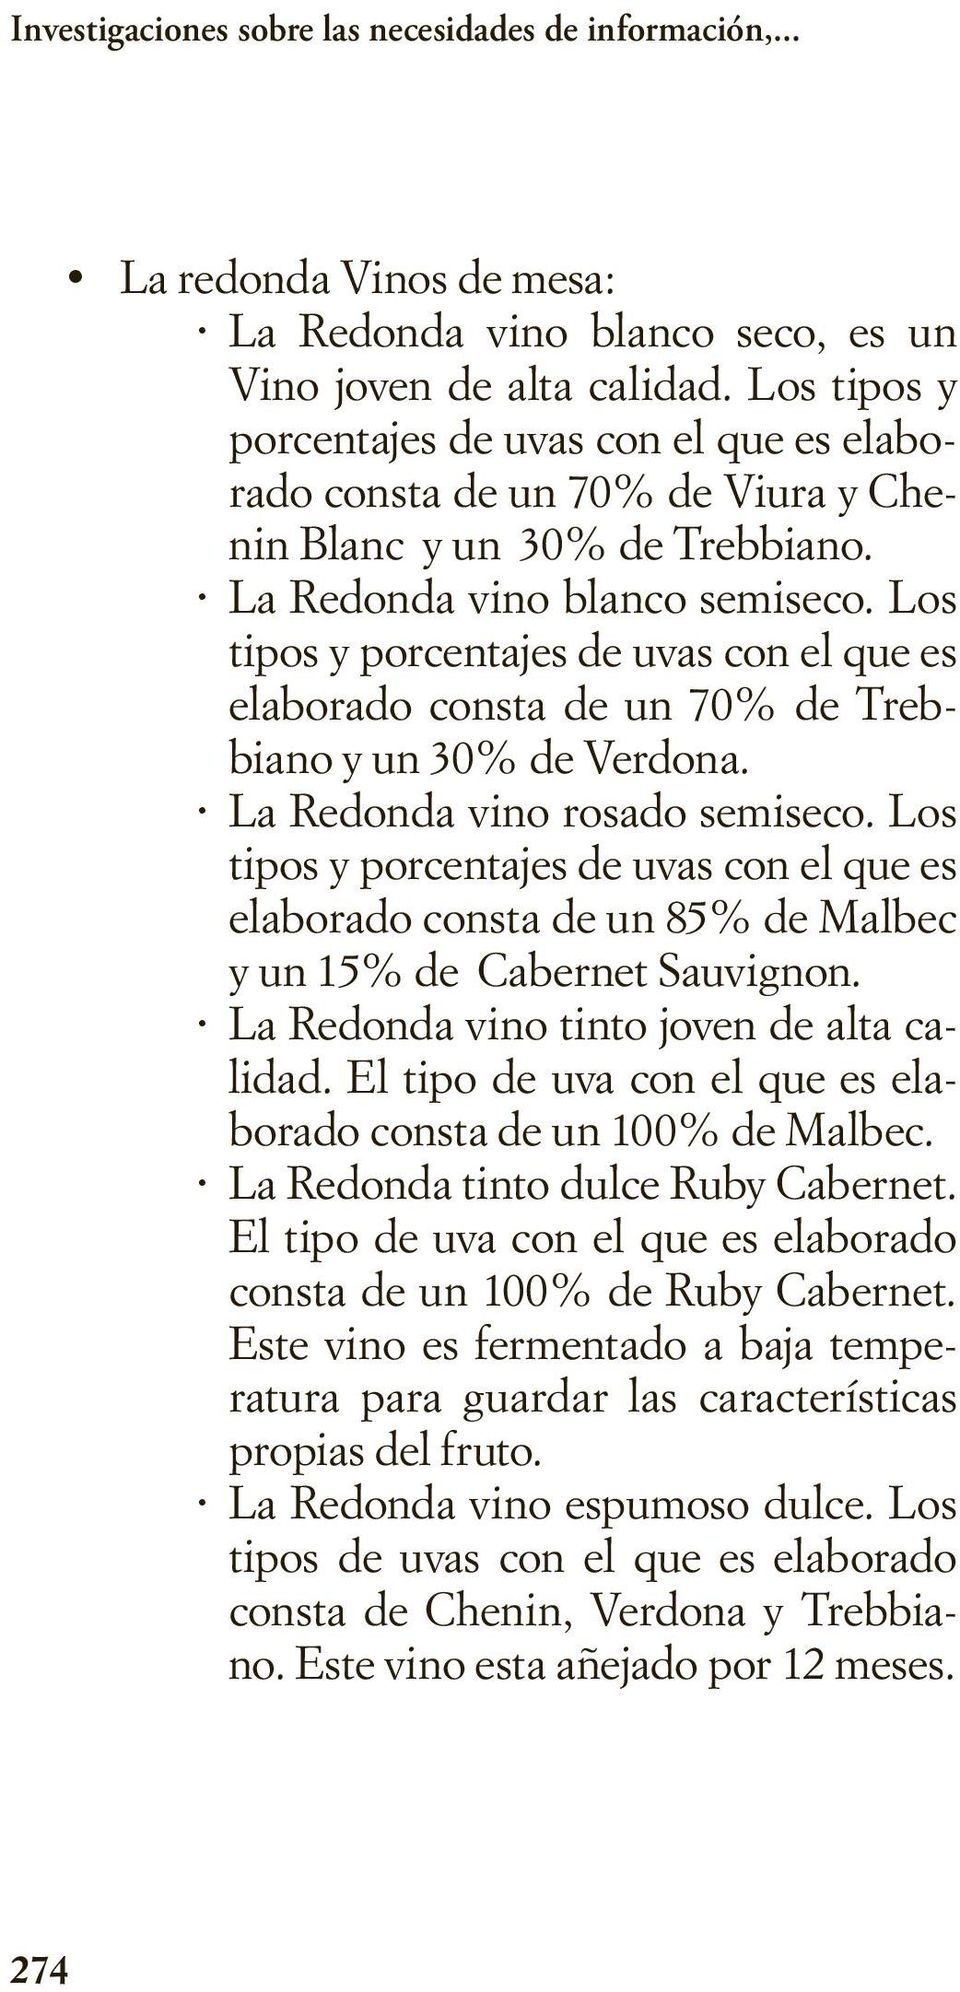 Los tipos y porcentajes de uvas con el que es elaborado consta de un 70% de Trebbiano y un 30% de Verdona. La Redonda vino rosado semiseco.